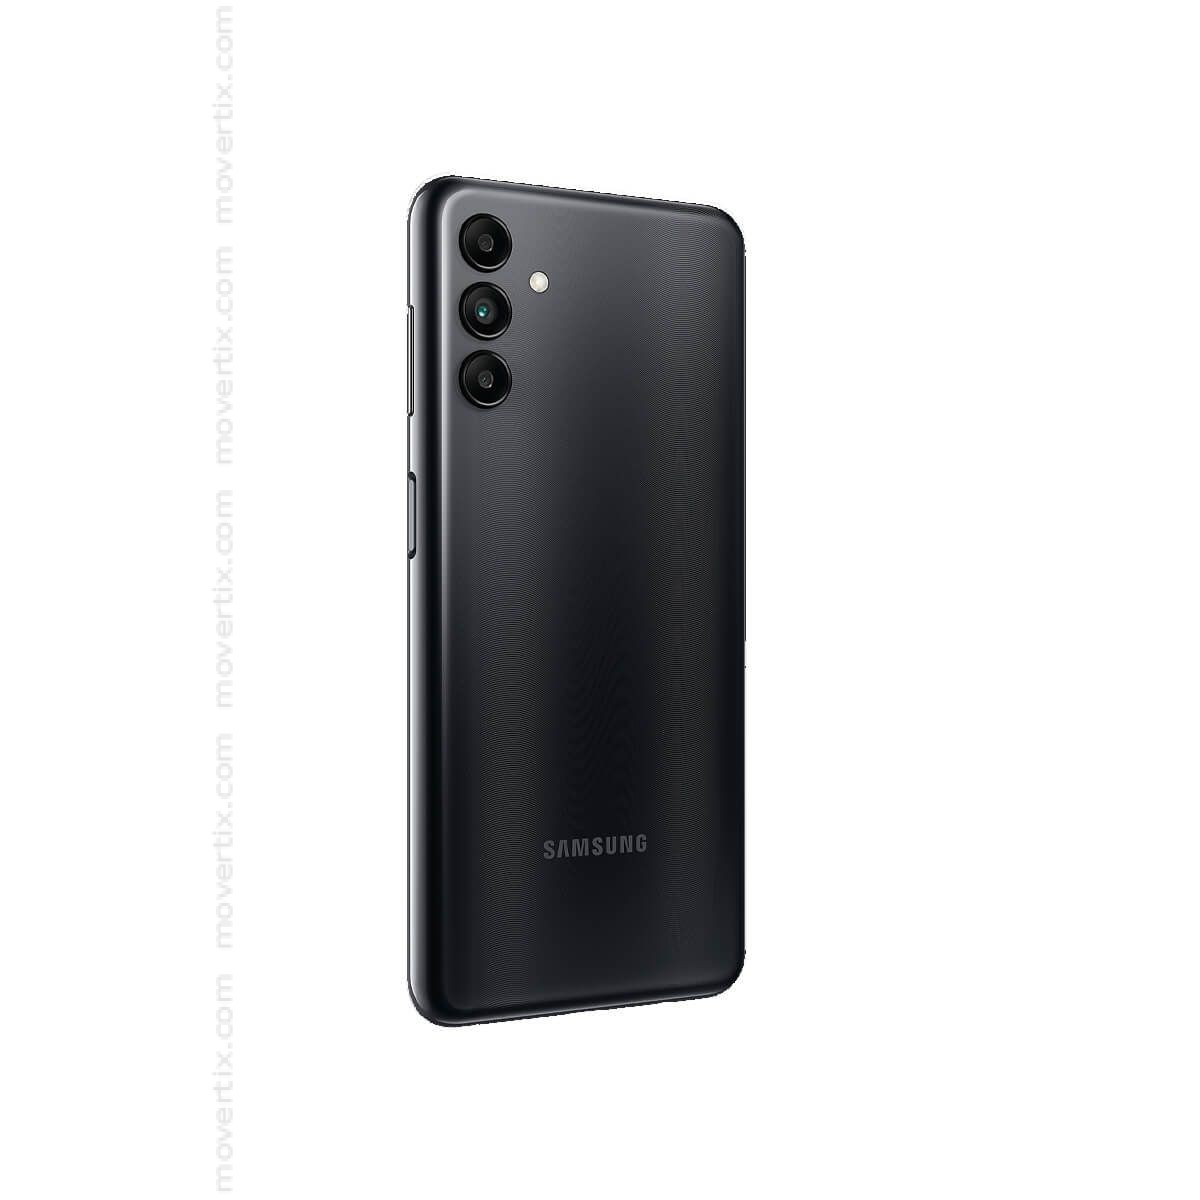 Samsung Galaxy A04s Dual SIM Black 32GB and 3GB RAM - SM-A047F/DS  (8806094581874)